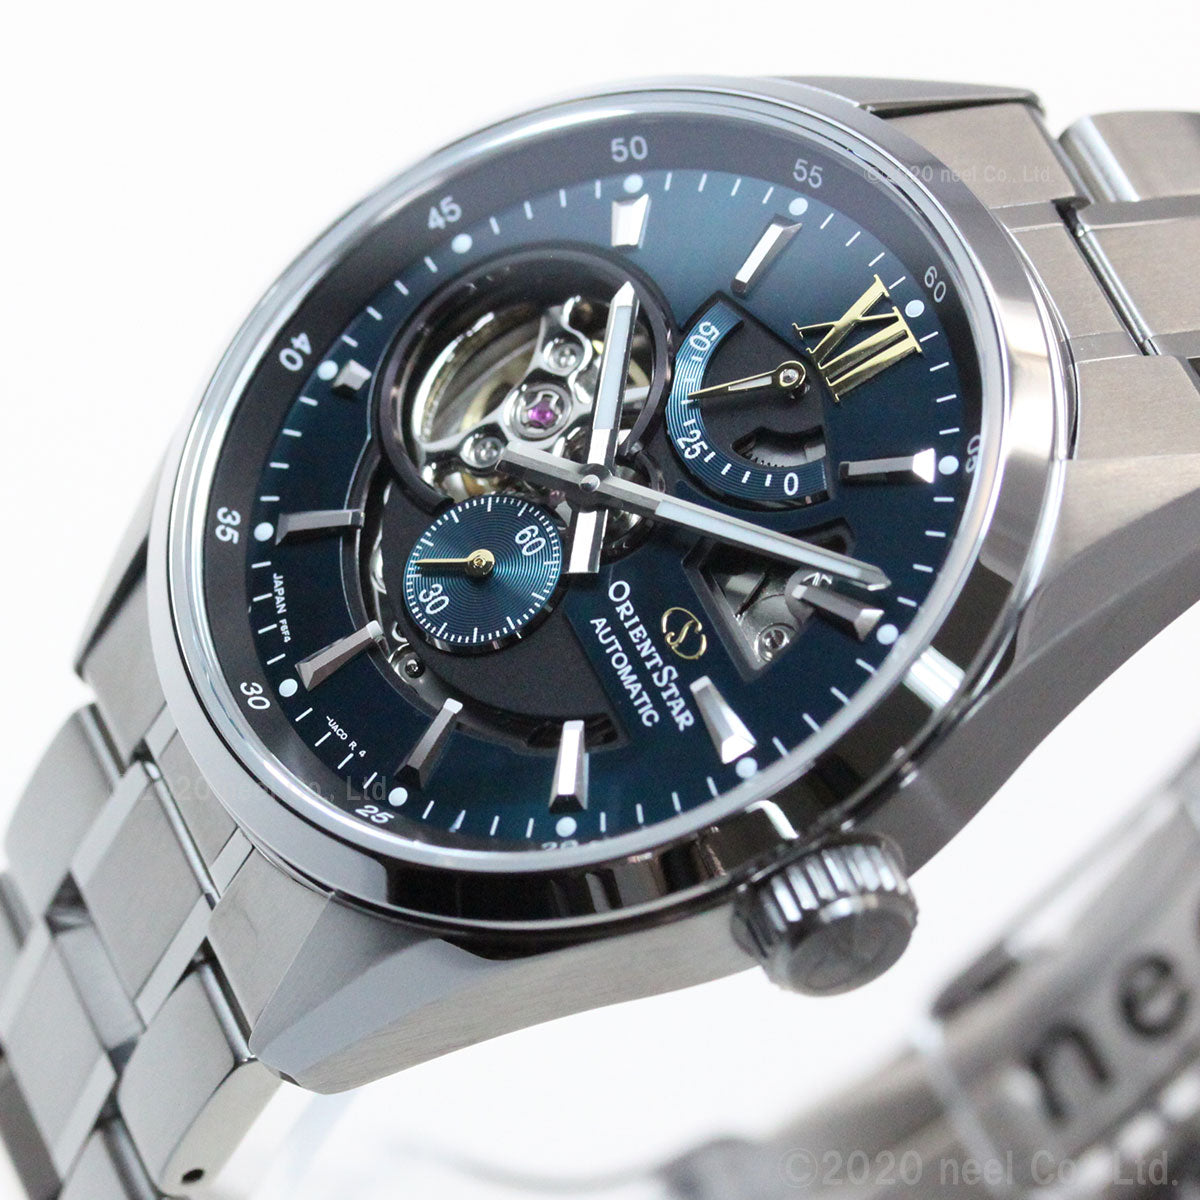 オリエントスター ORIENT STAR モダンスケルトン 腕時計 メンズ 自動巻き 機械式 コンテンポラリー RK-AV0114E